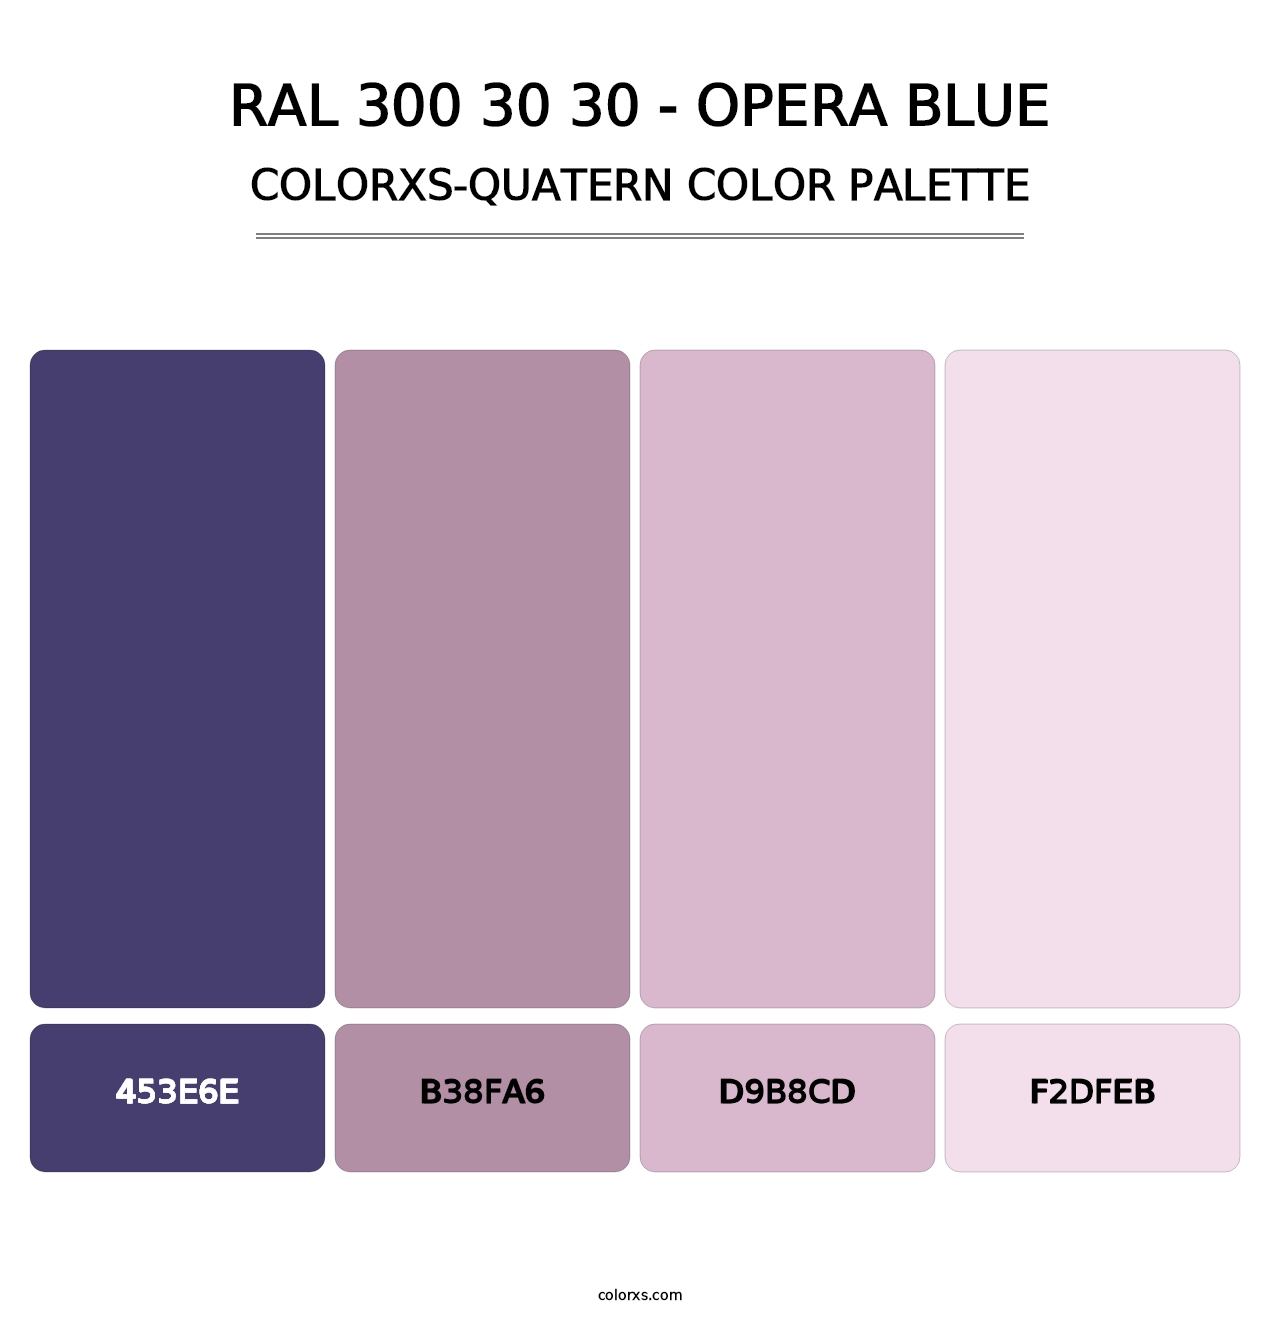 RAL 300 30 30 - Opera Blue - Colorxs Quatern Palette